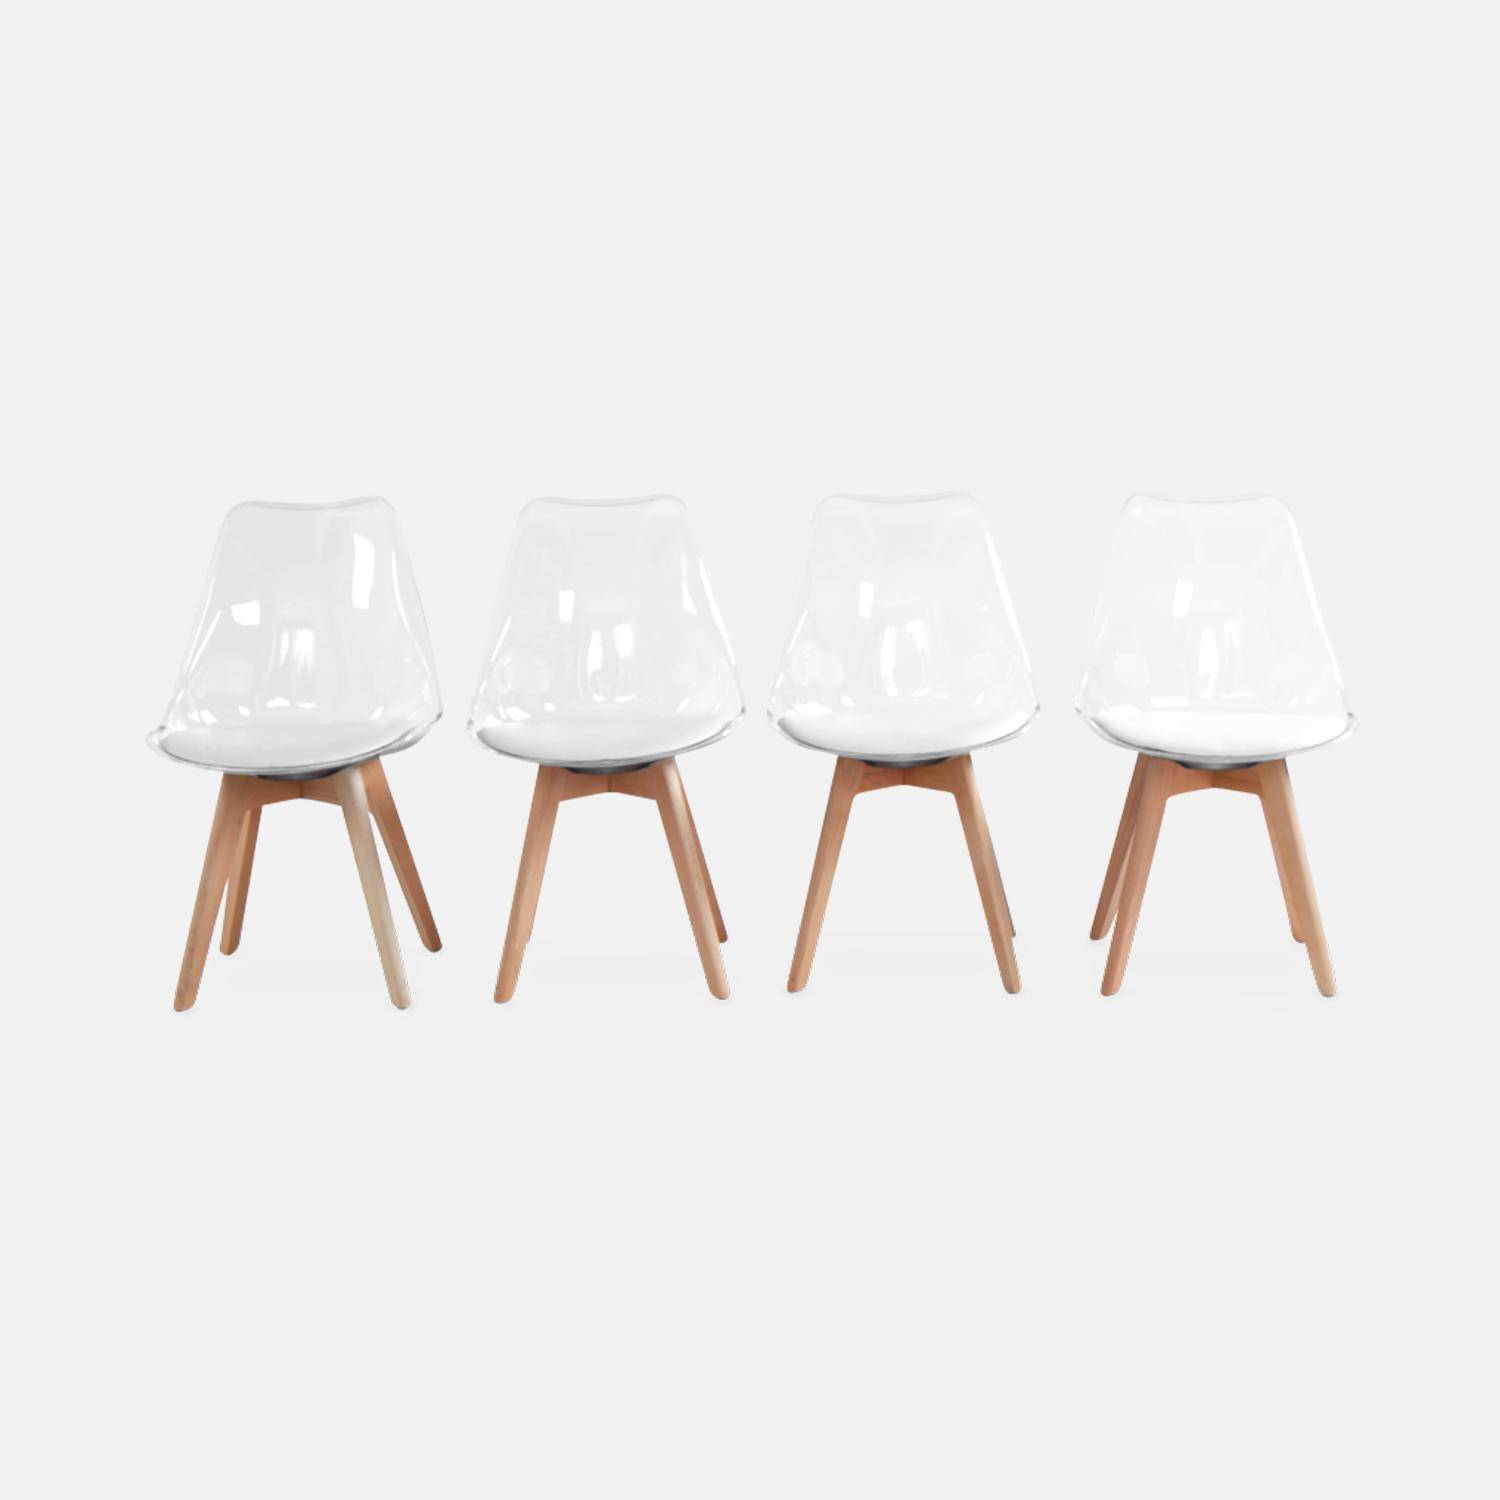 Juego de 4 sillas escandinavas - Lagertha - patas de madera, asientos individuales, cojín blanco, carcasa transparente ,sweeek,Photo4